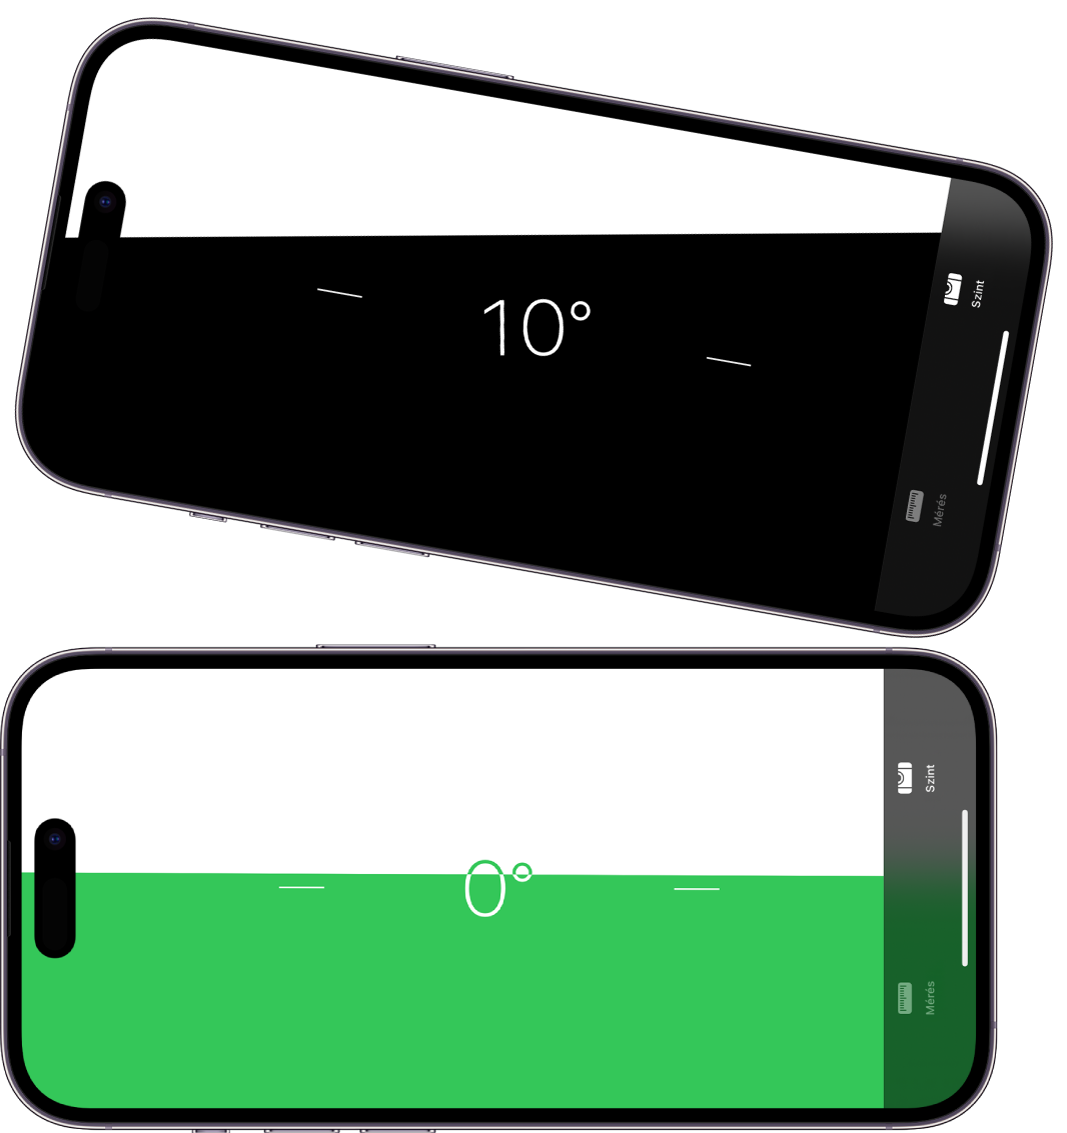 A vízszint képernyője a Mérés appban. Felül az iPhone 10 fokos szögben van megdöntve, alul pedig vízszintes pozícióban van.